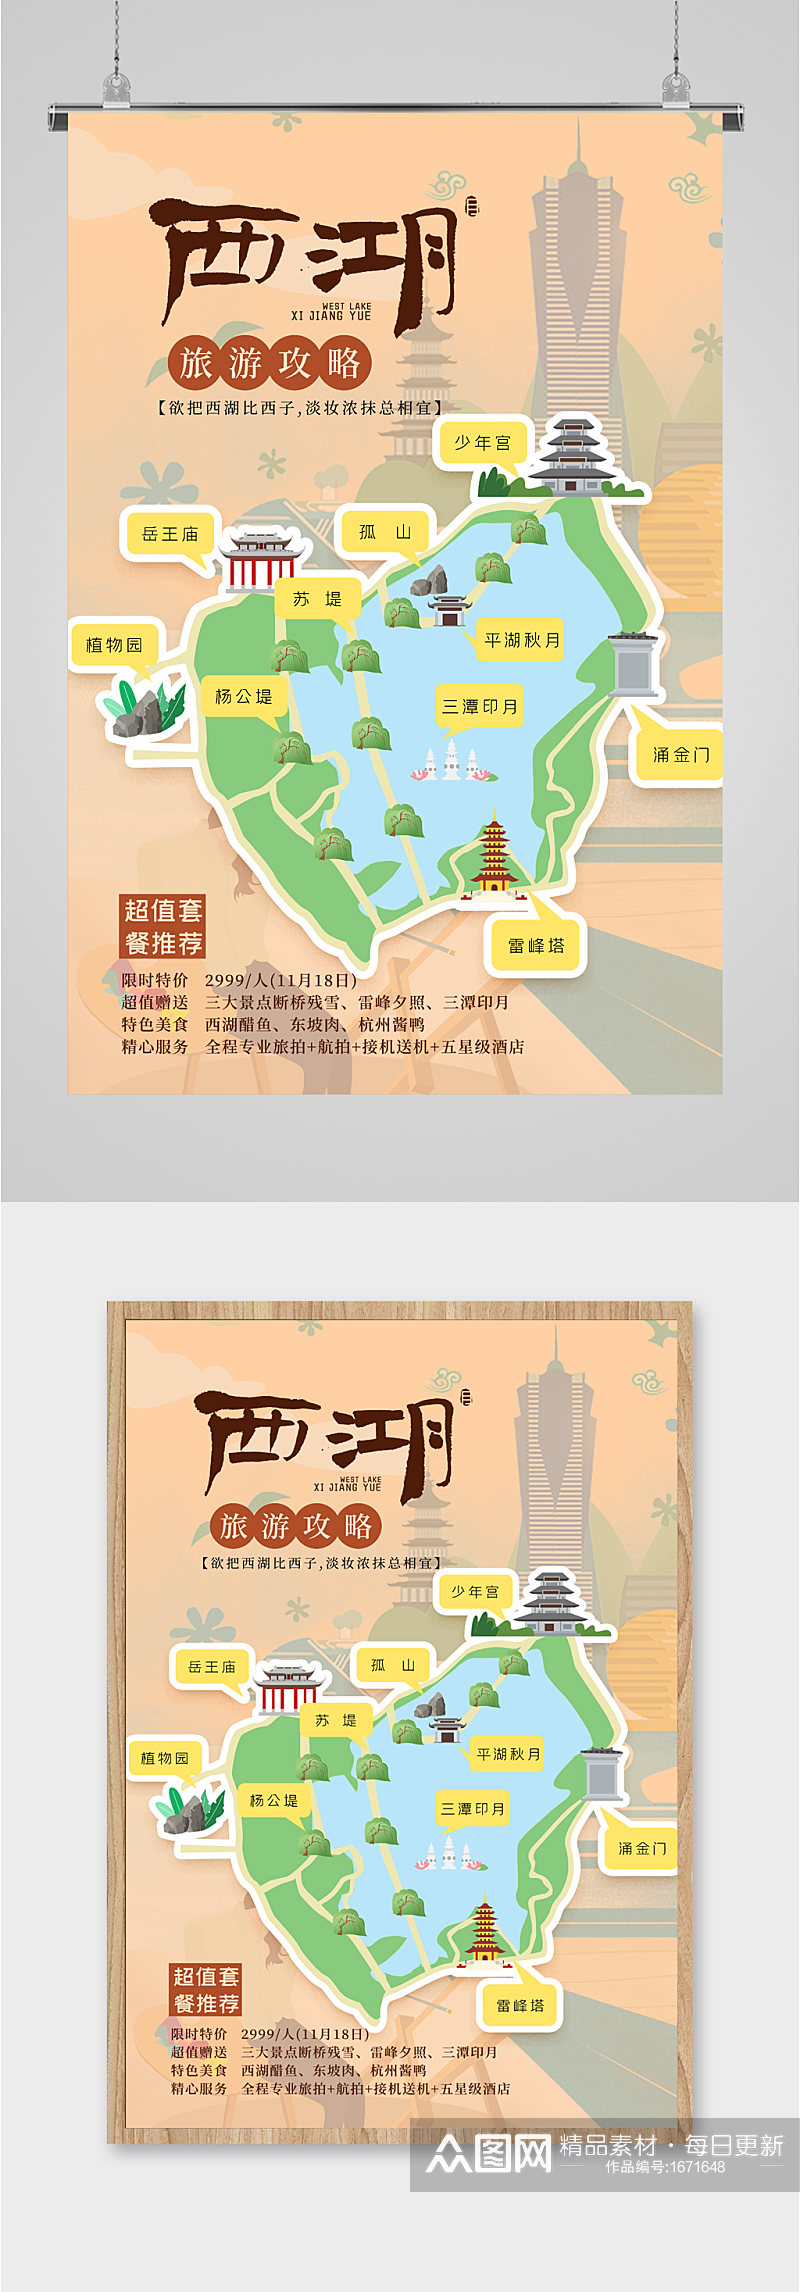 杭州西湖游览攻略图海报素材